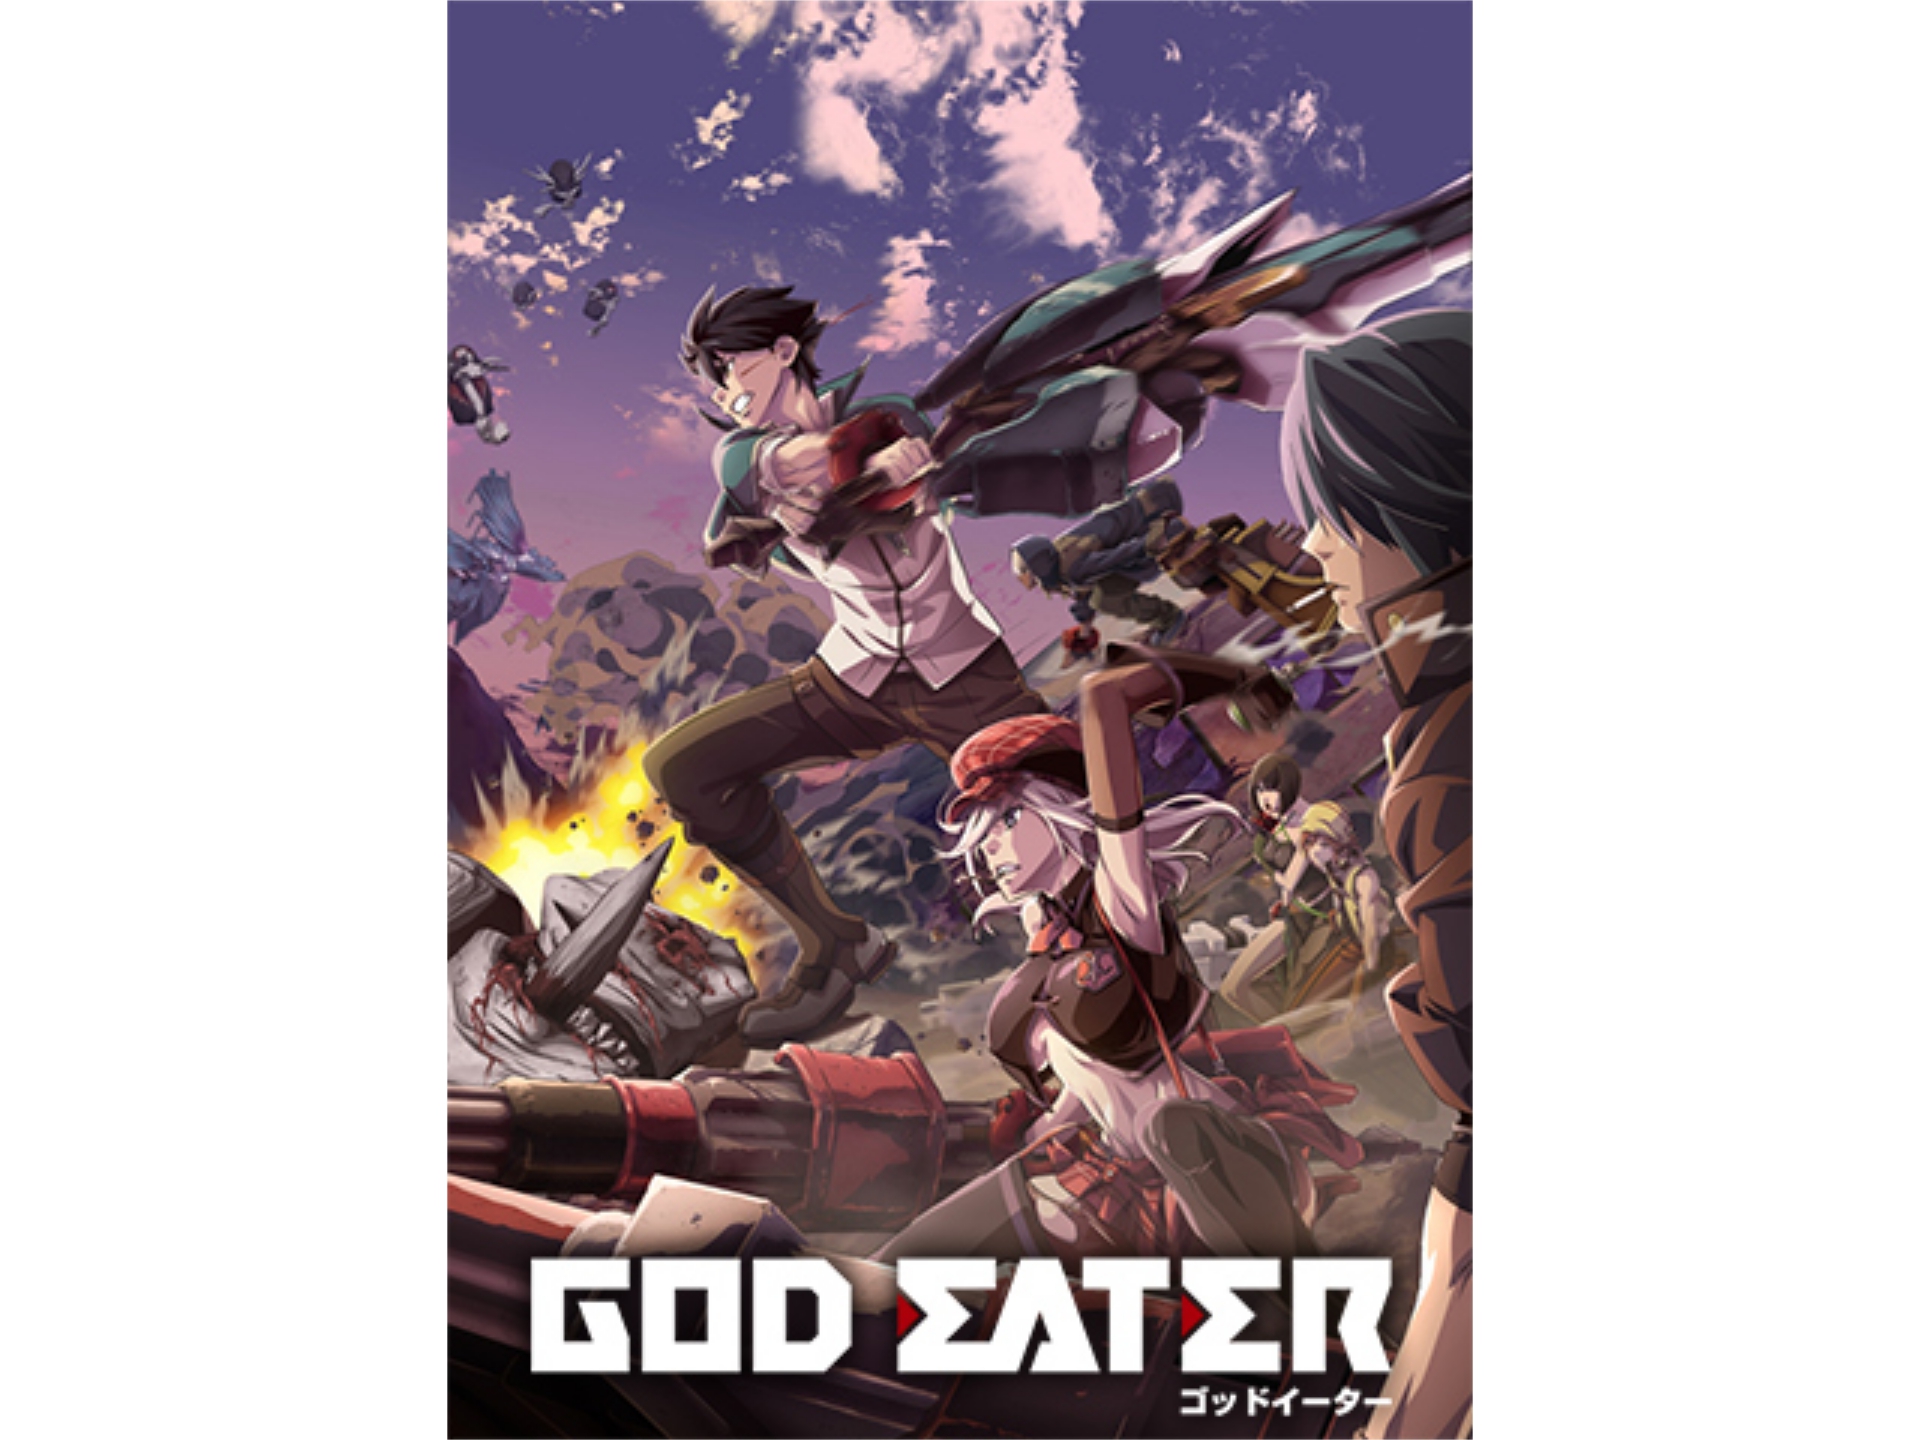 アニメ God Eater 第12話 第一部隊 フル動画 初月無料 動画配信サービスのビデオマーケット